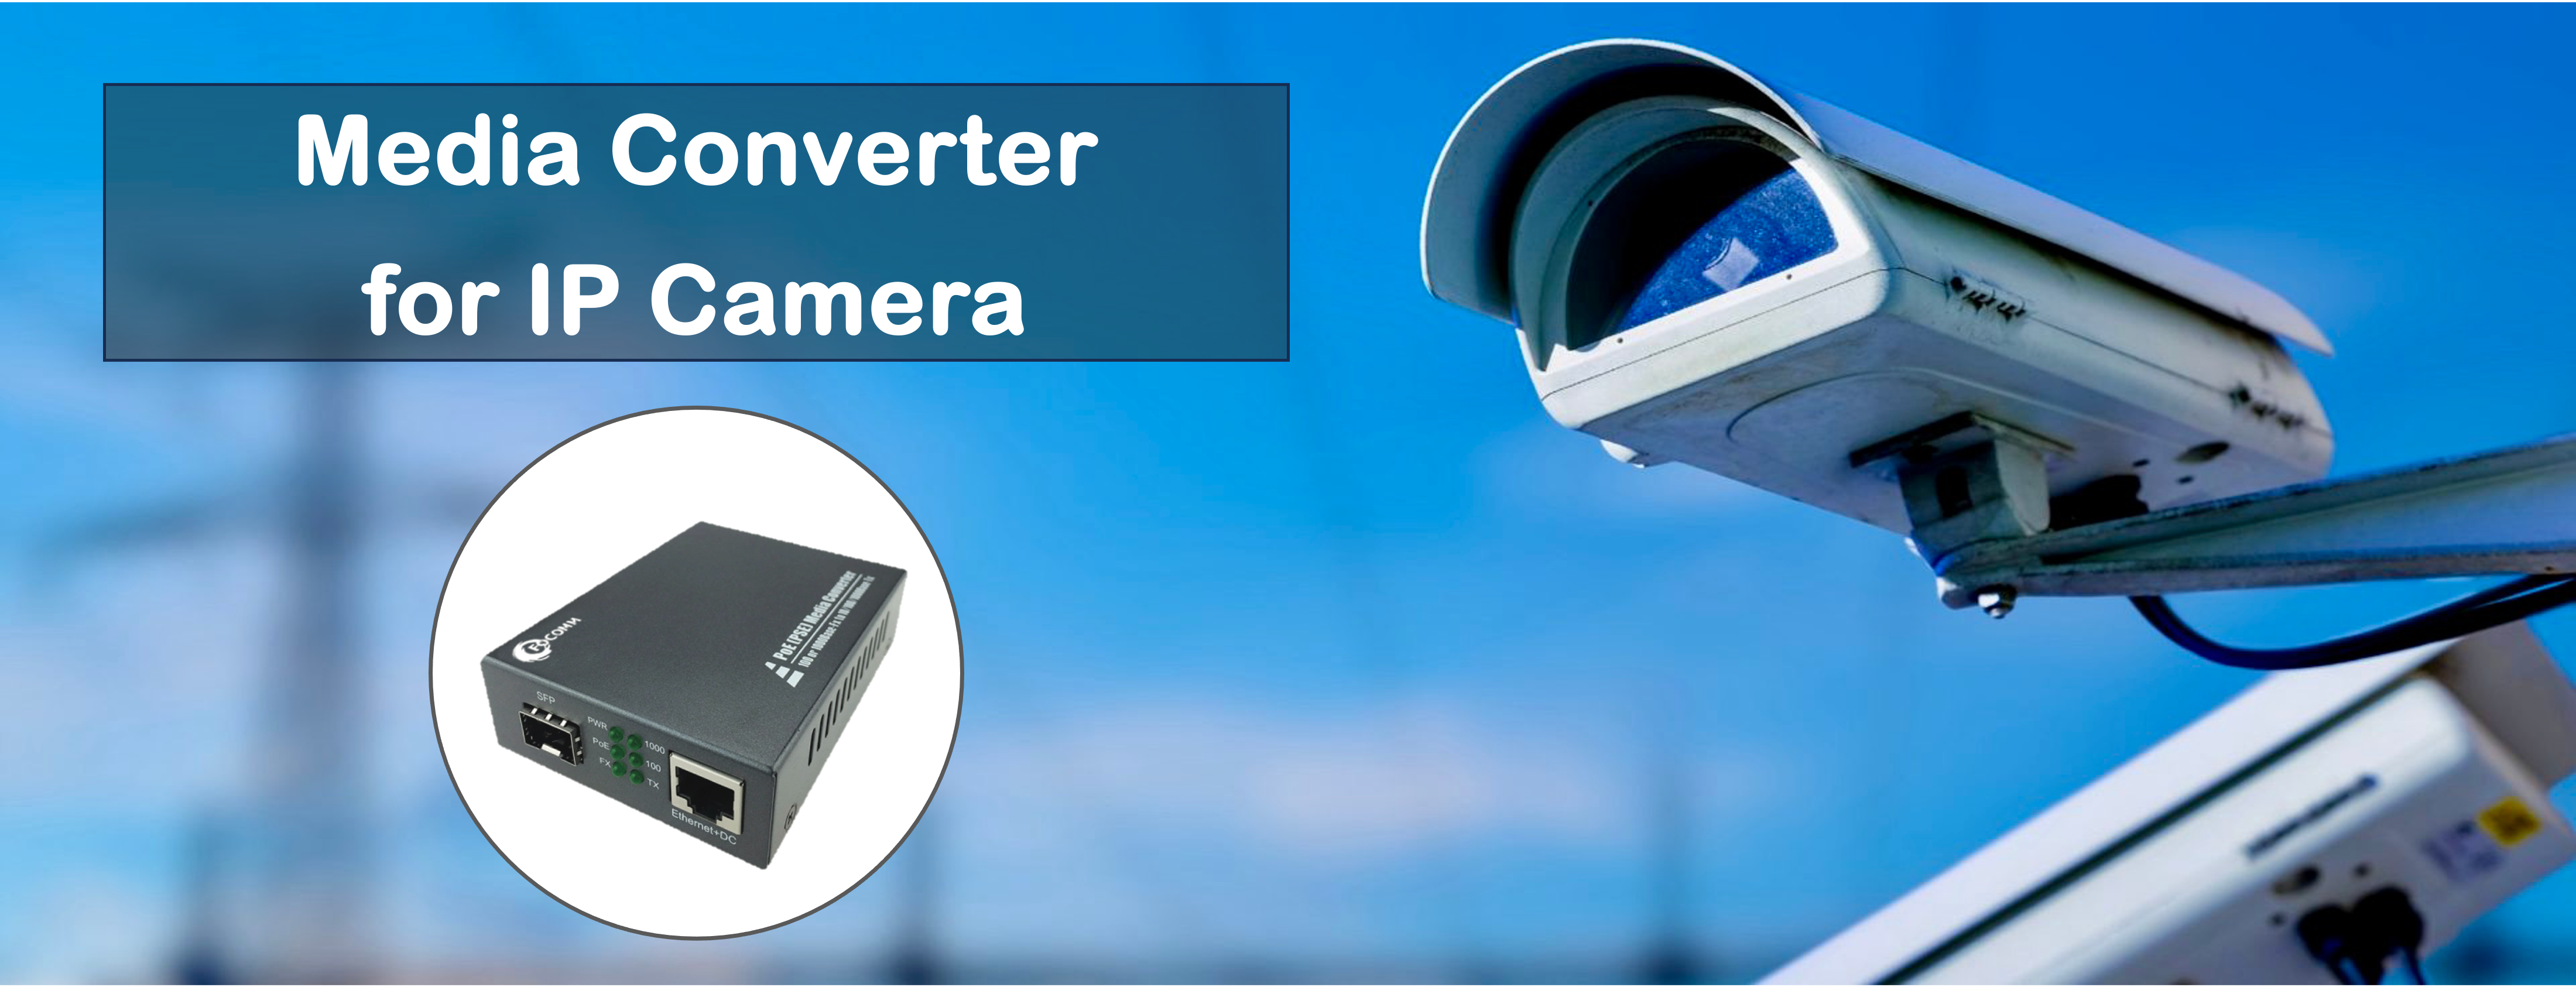 การใช้งาน Media Converter กับกล้องวงจรปิด IP Camera